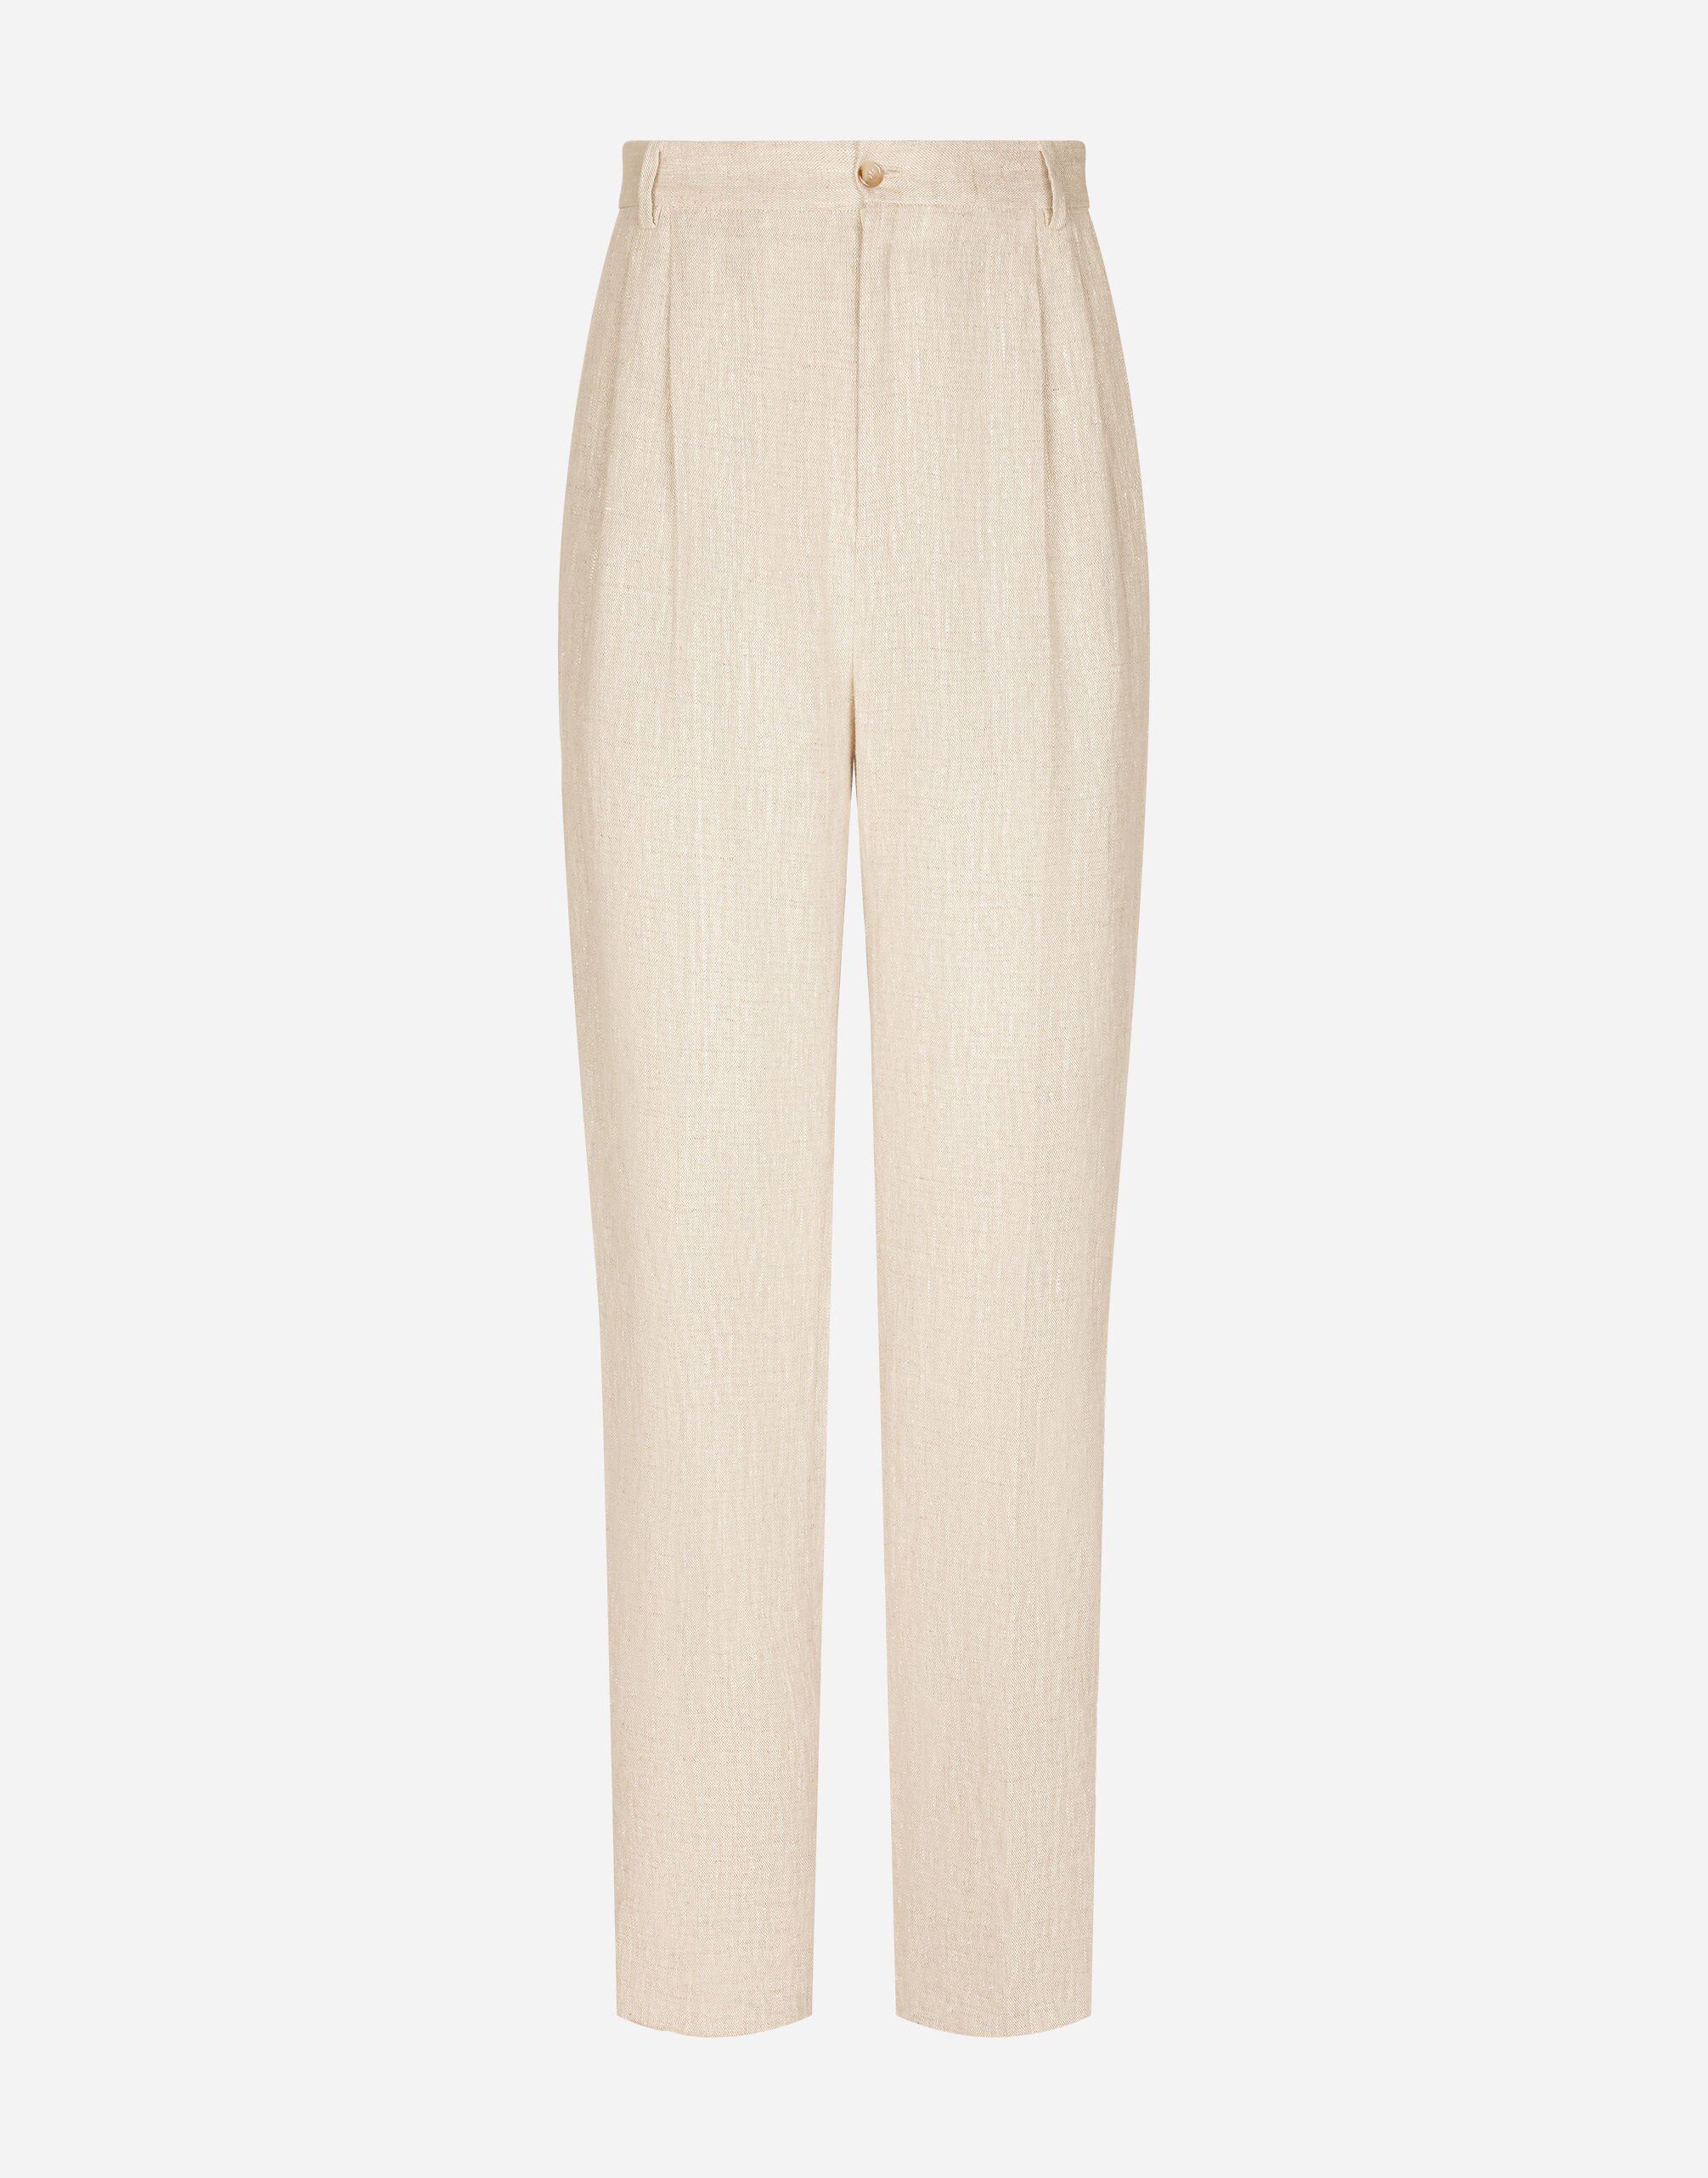 Dolce & Gabbana سروال كتان محبوك أبيض VG4444VP287